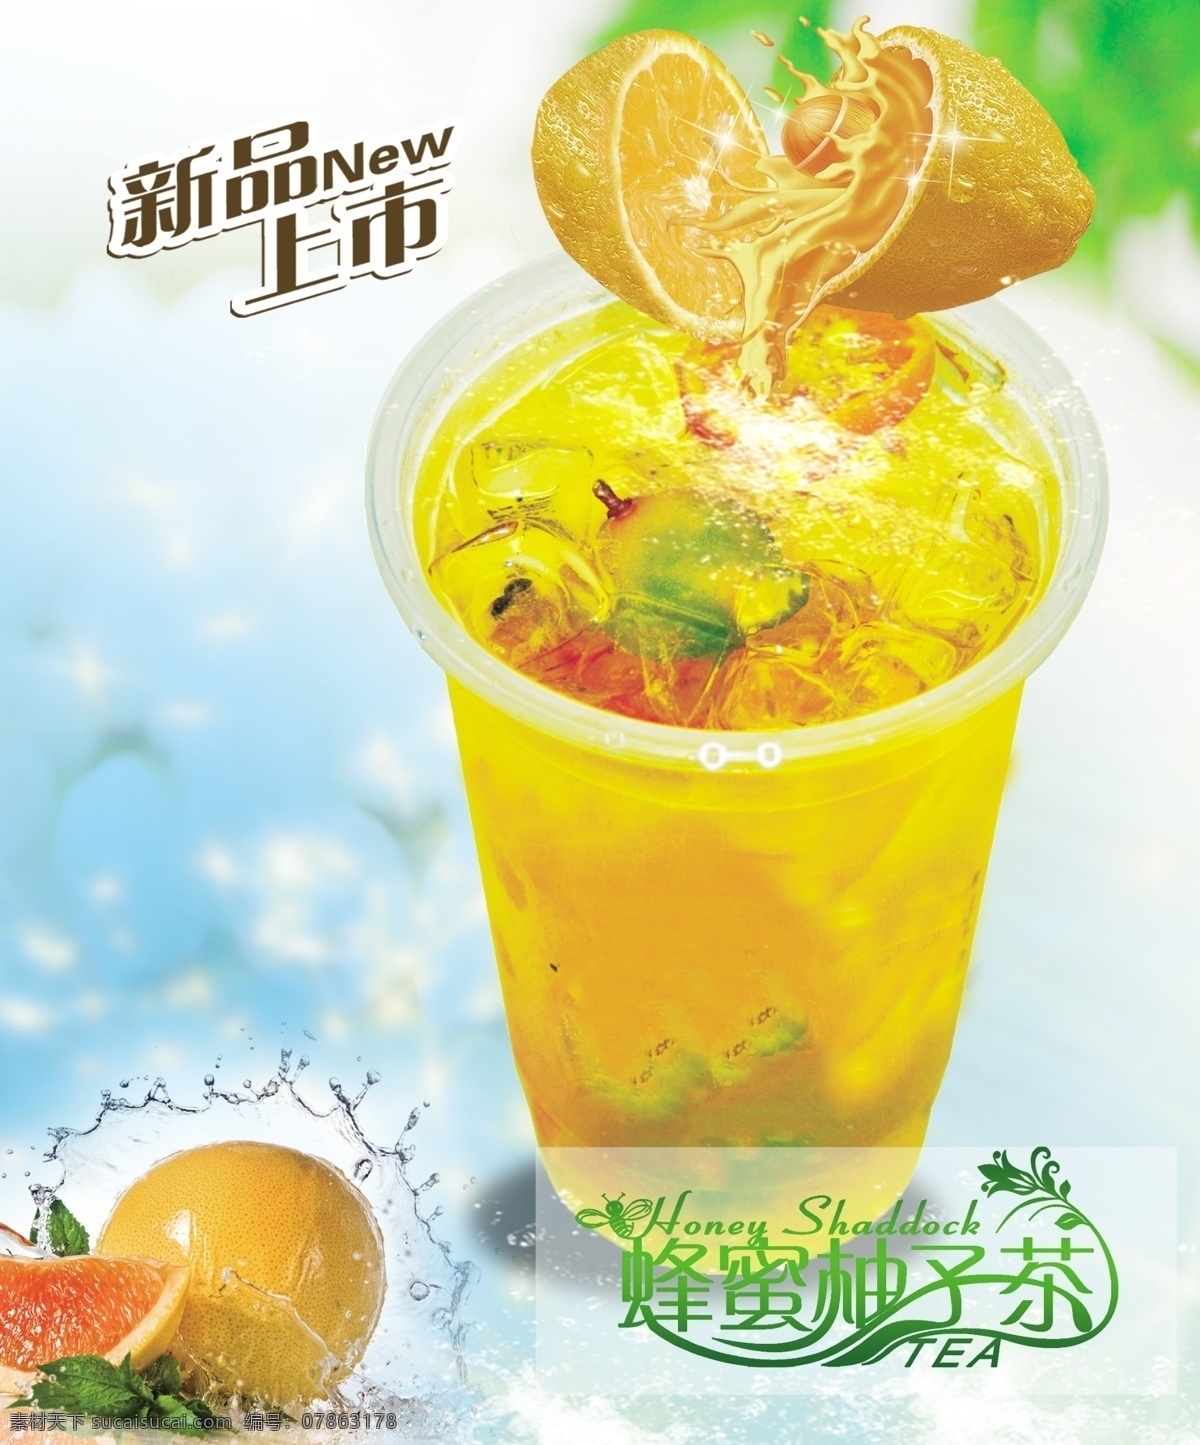 蜂蜜茶 蜂蜜柚子茶 新品上市 夏季饮品 饮品 饮品素材 饮品素材图 柚子茶 蜂蜜饮品 饮品海报